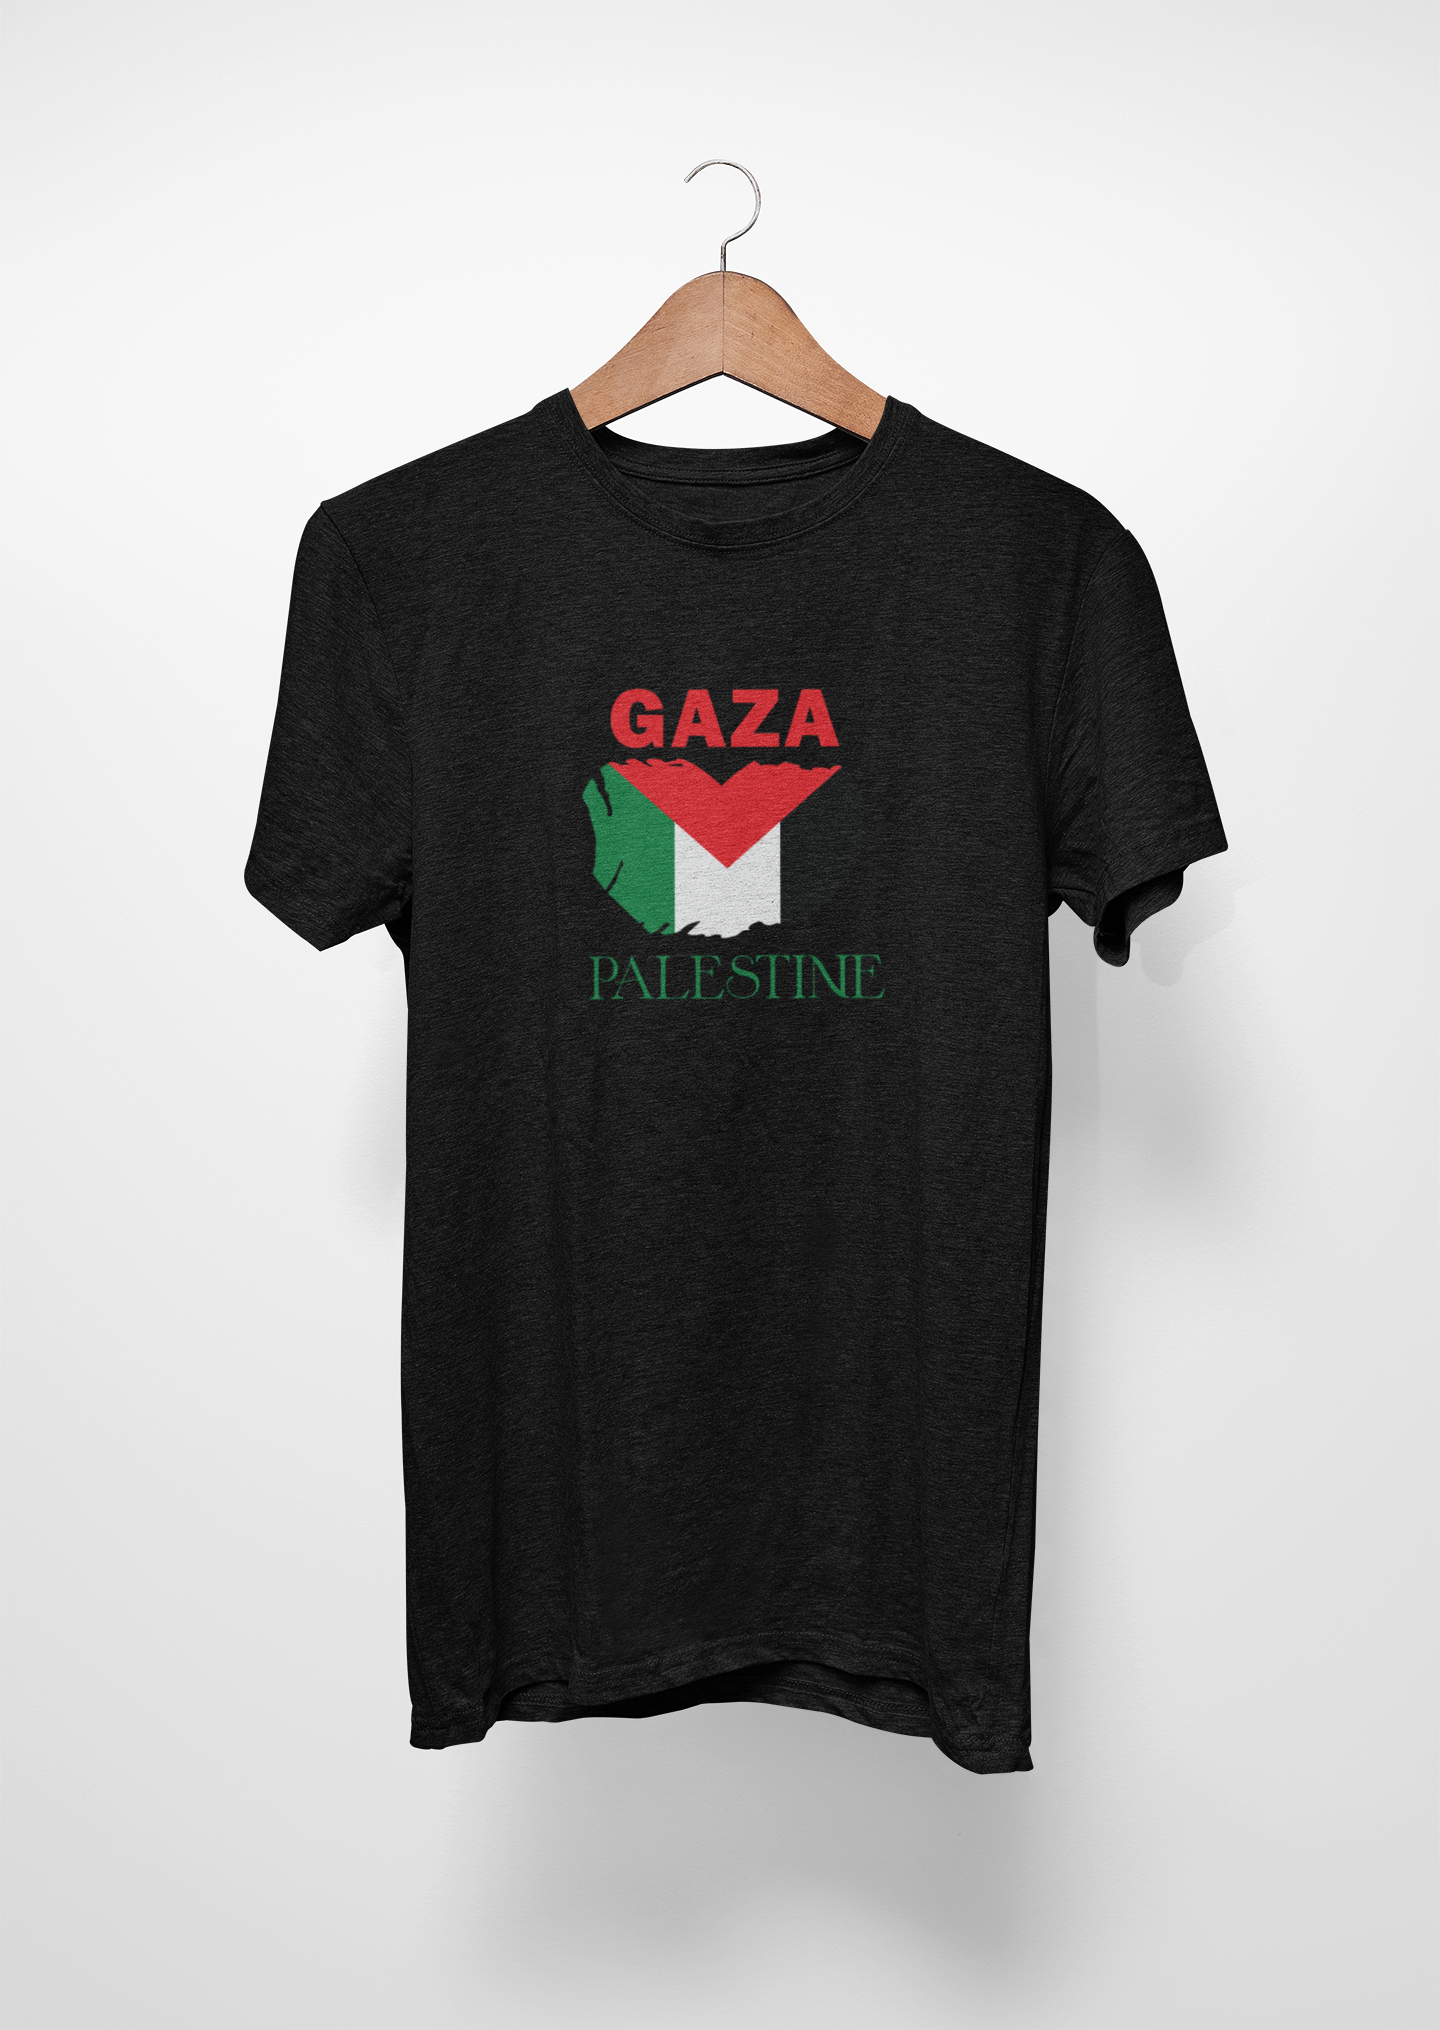 تيشيرت غزة